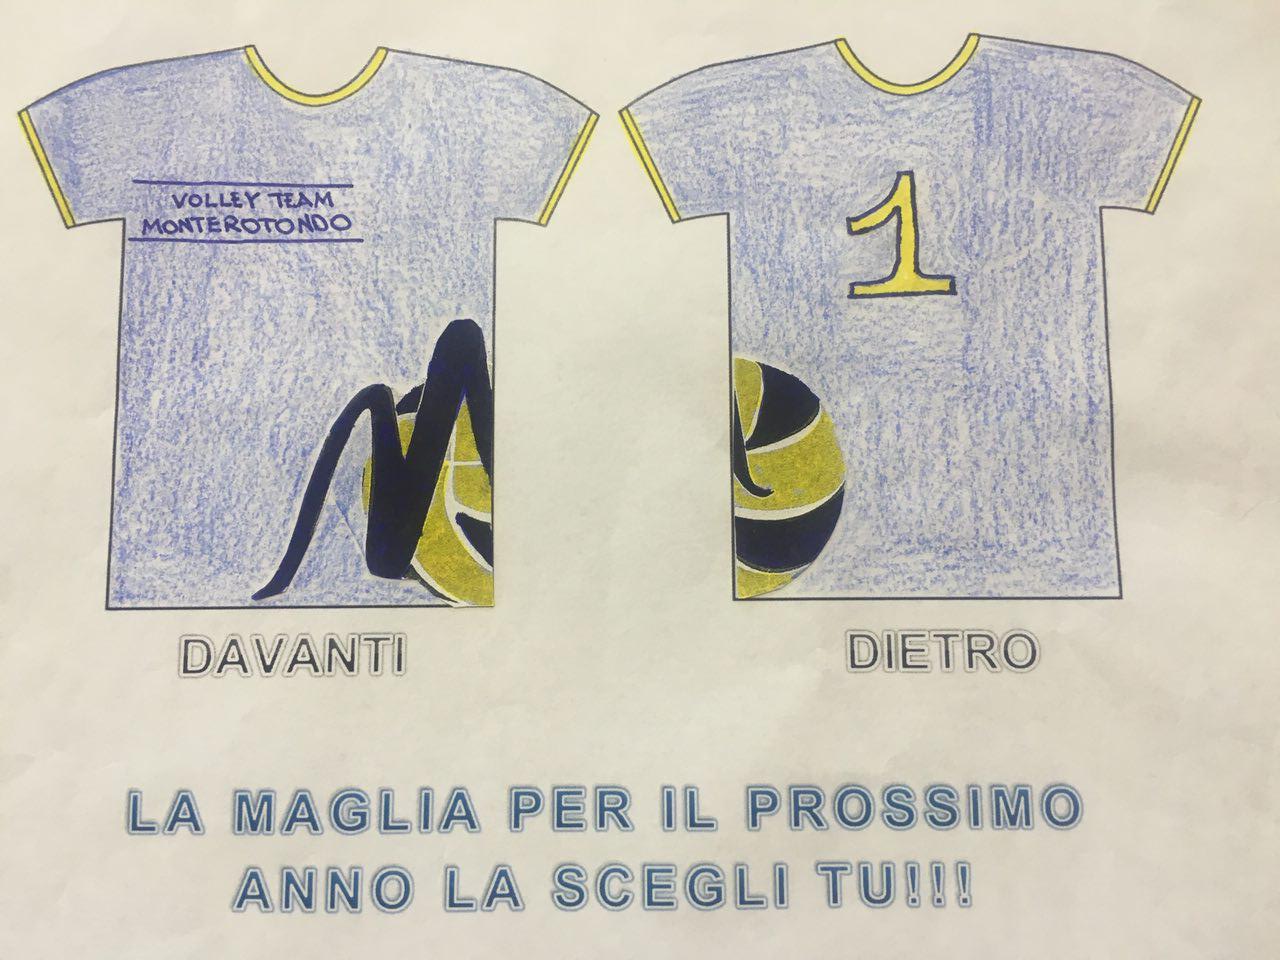 “Scegli tu la prossima maglia”: vince Daniele Cioffi con 525 voti!